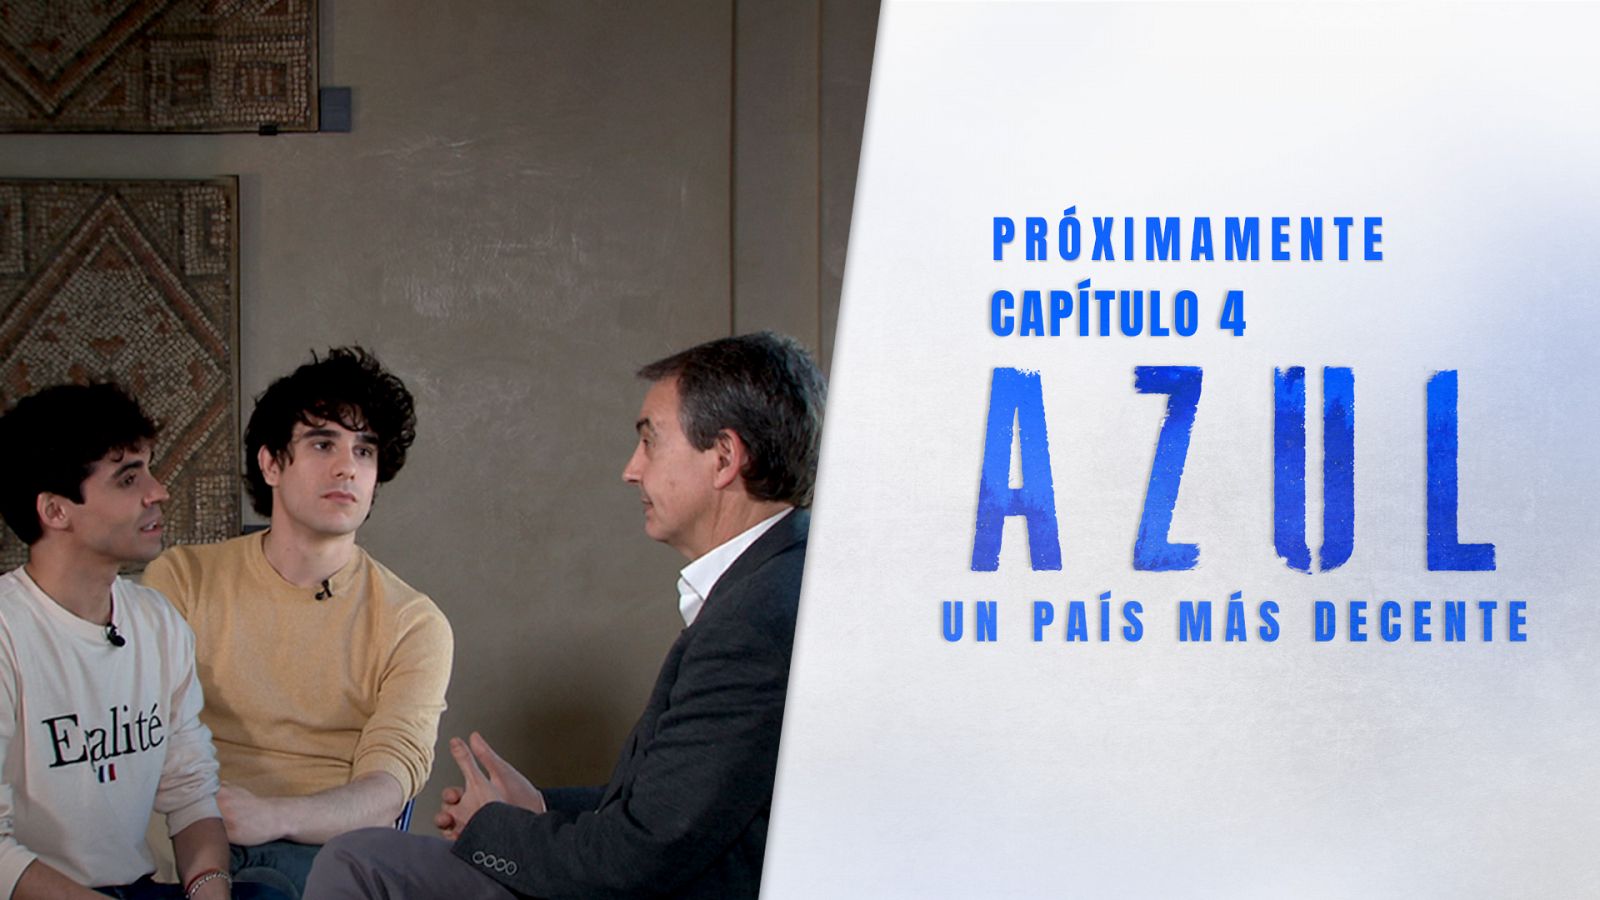 Nosotrxs somos - Avance: AZUL. La charla entre Los Javis y Zapatero sobre el matrimonio igualitario